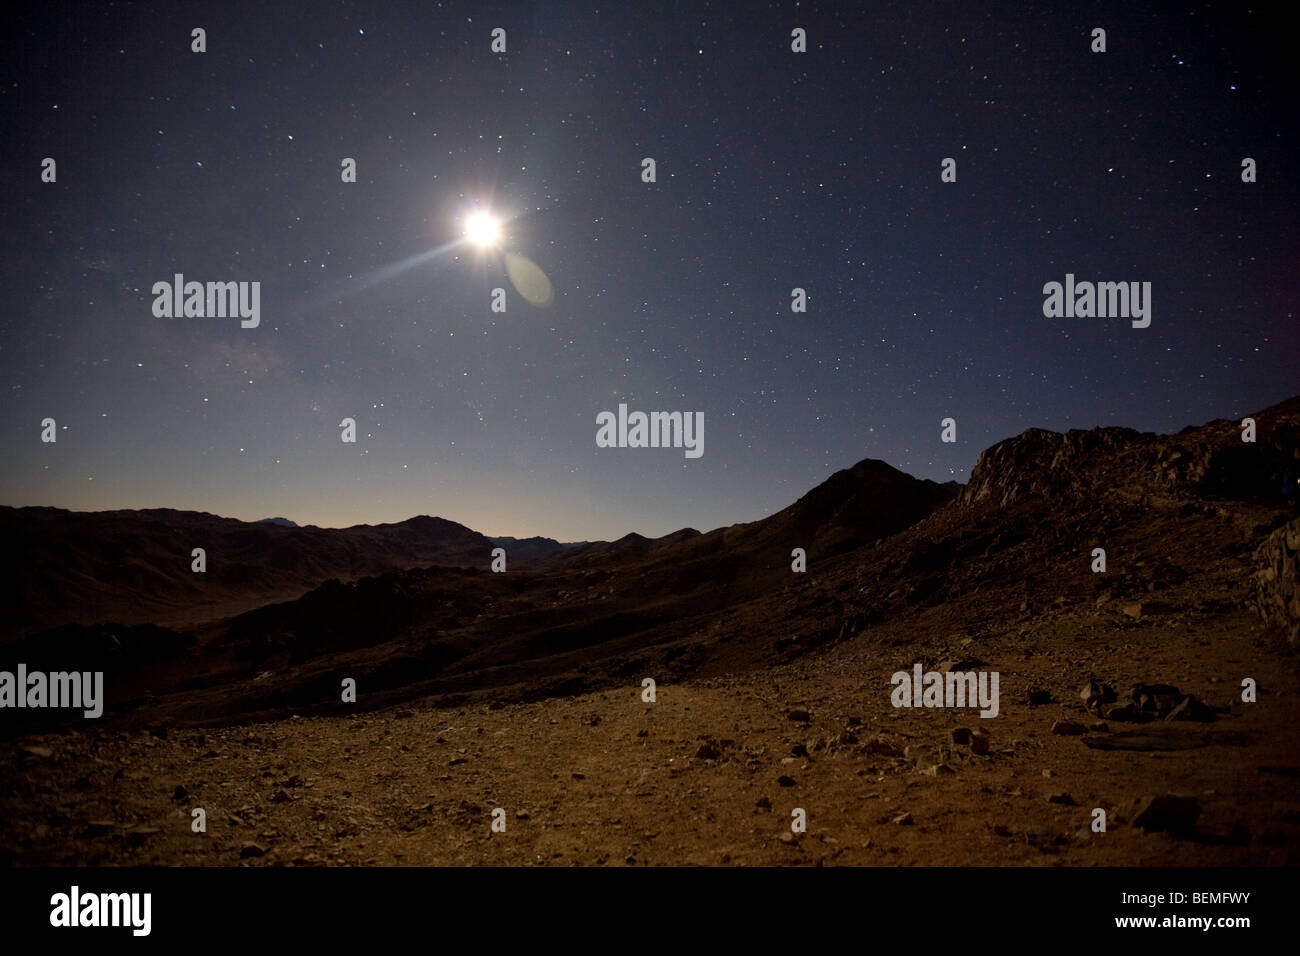 moonlight over the desert landscape of Mount Sinai, Egypt, Middle East Stock Photo